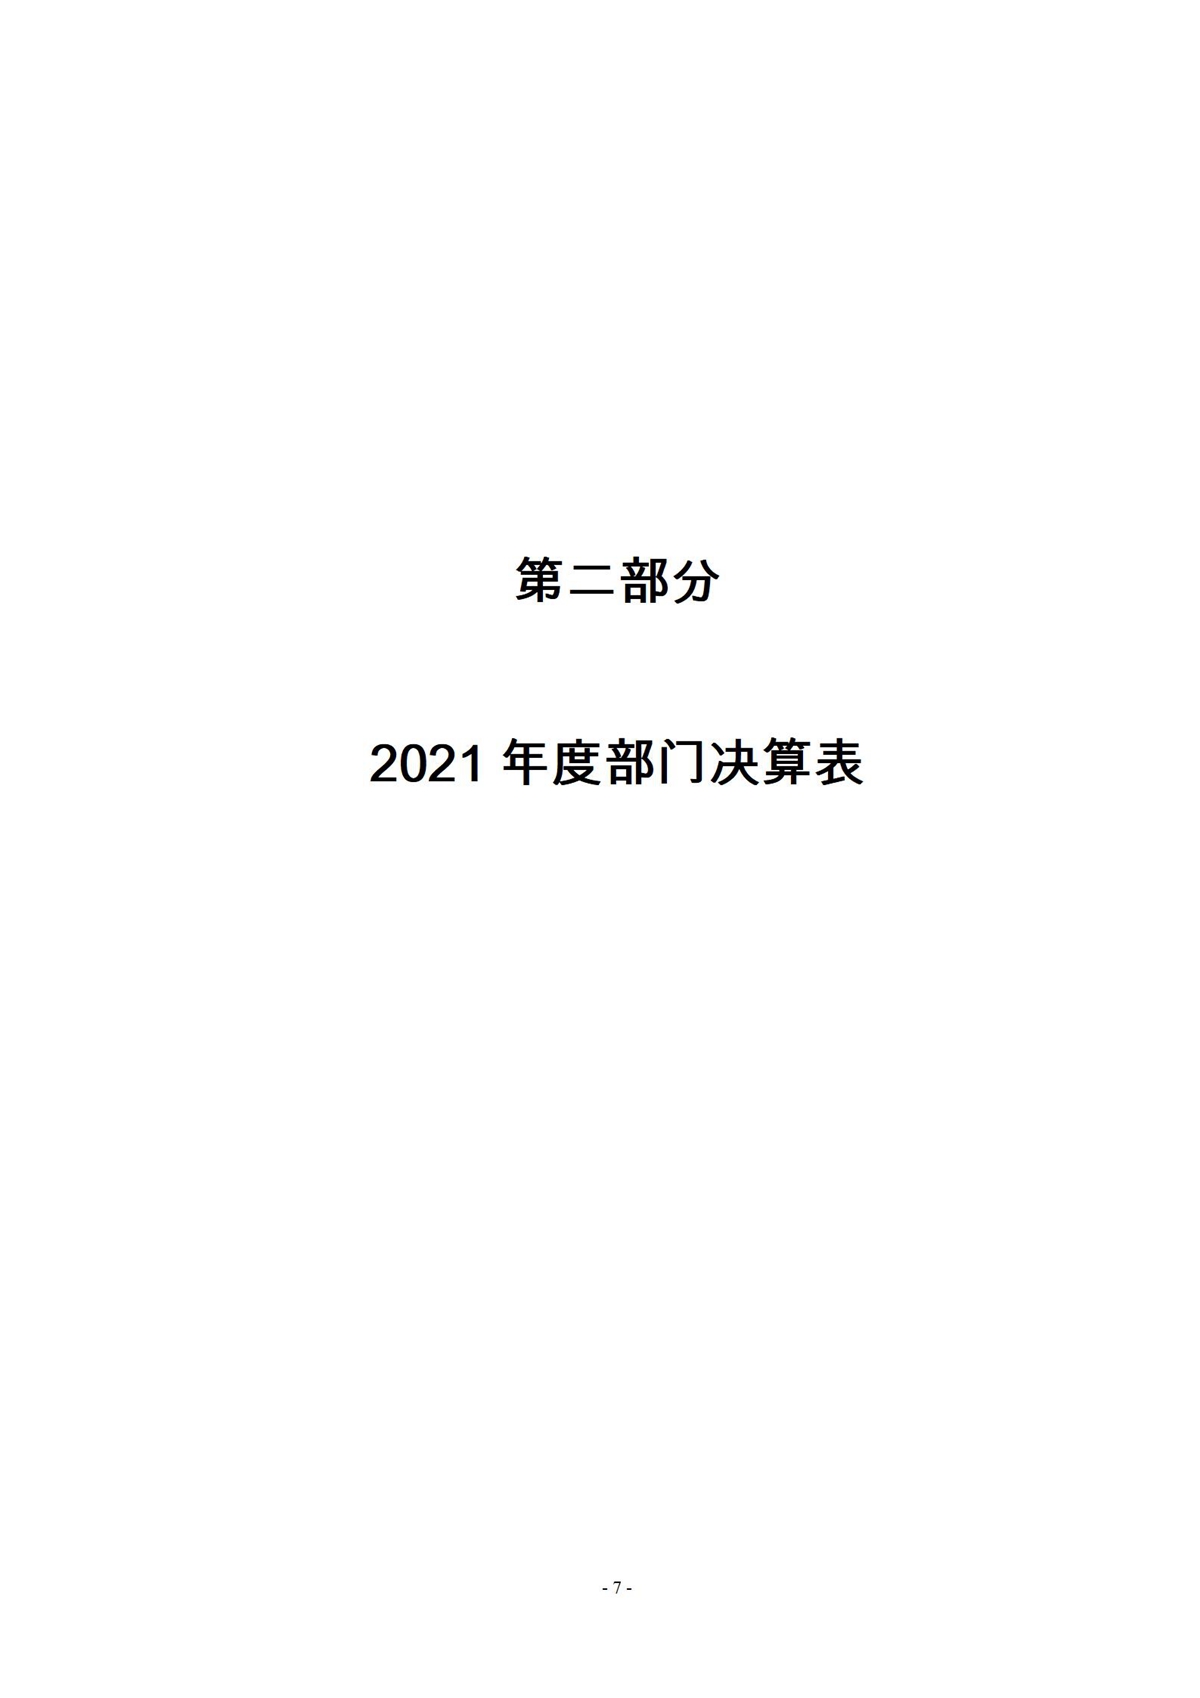 2021年度市委政法委部门决算_07.jpg